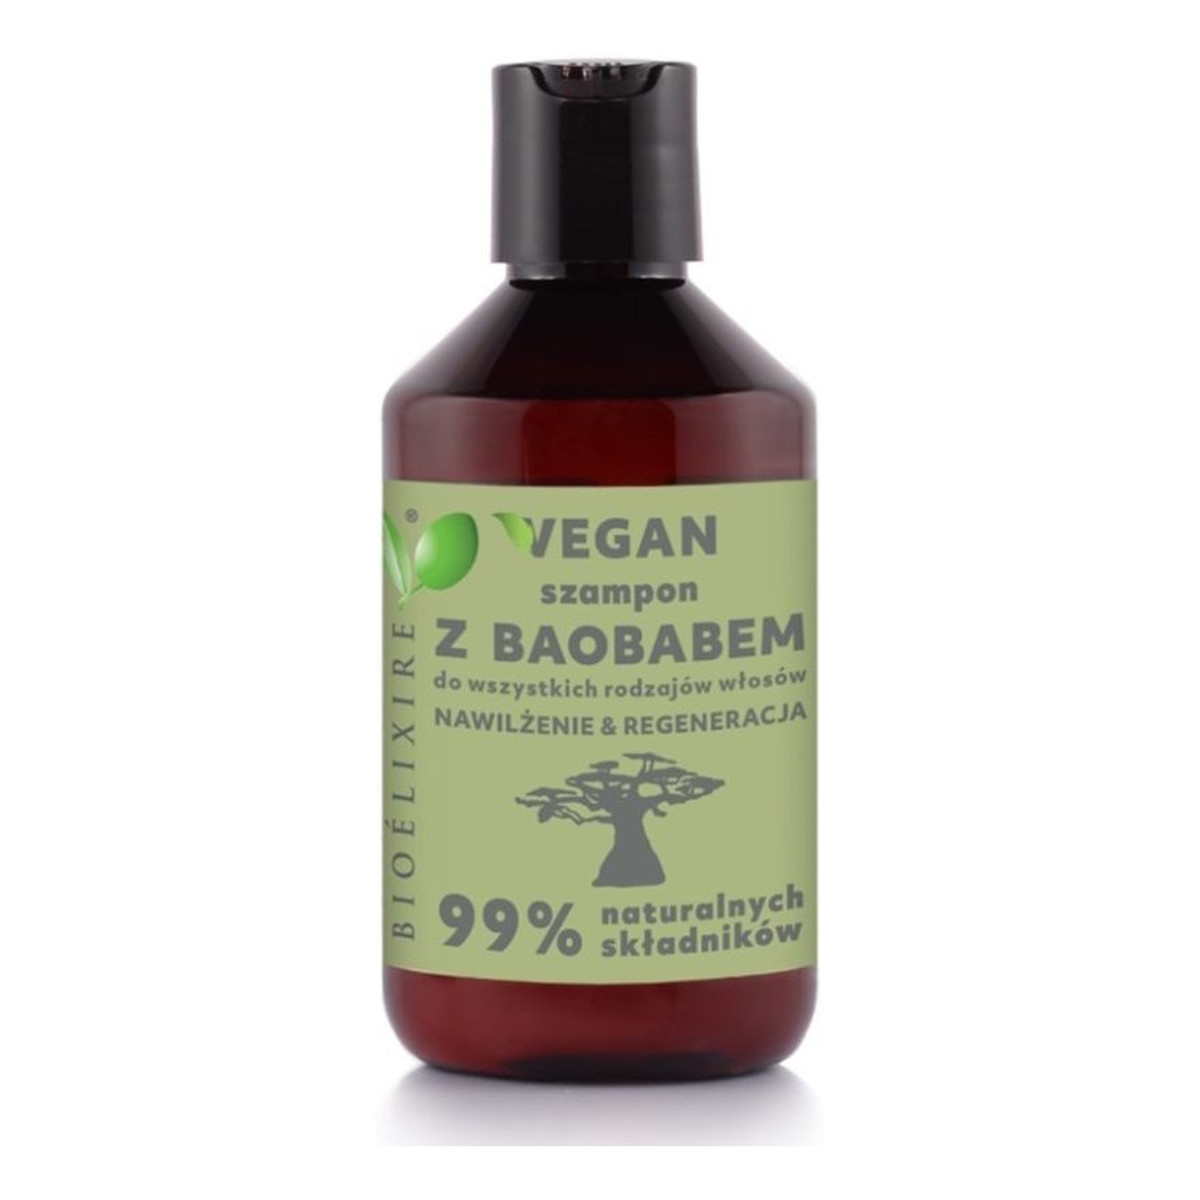 Bioelixire Baobab Vegan szampon intensywnie nawilżający 300ml